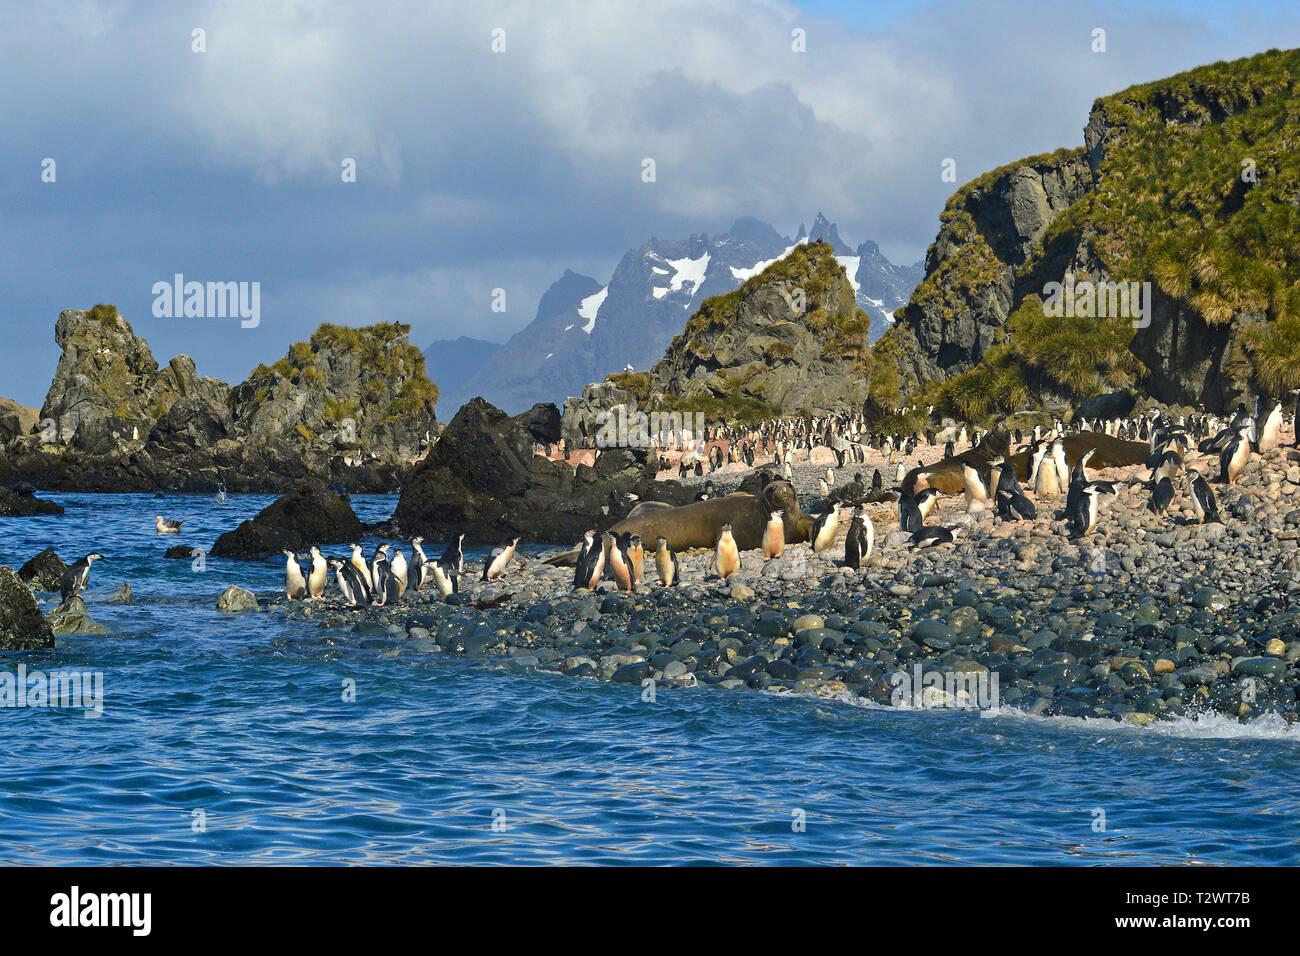 Manchot à Jugulaire (Pygoscelis antarctica), colonie de pingouins sur l'île de Géorgie du Sud Banque D'Images